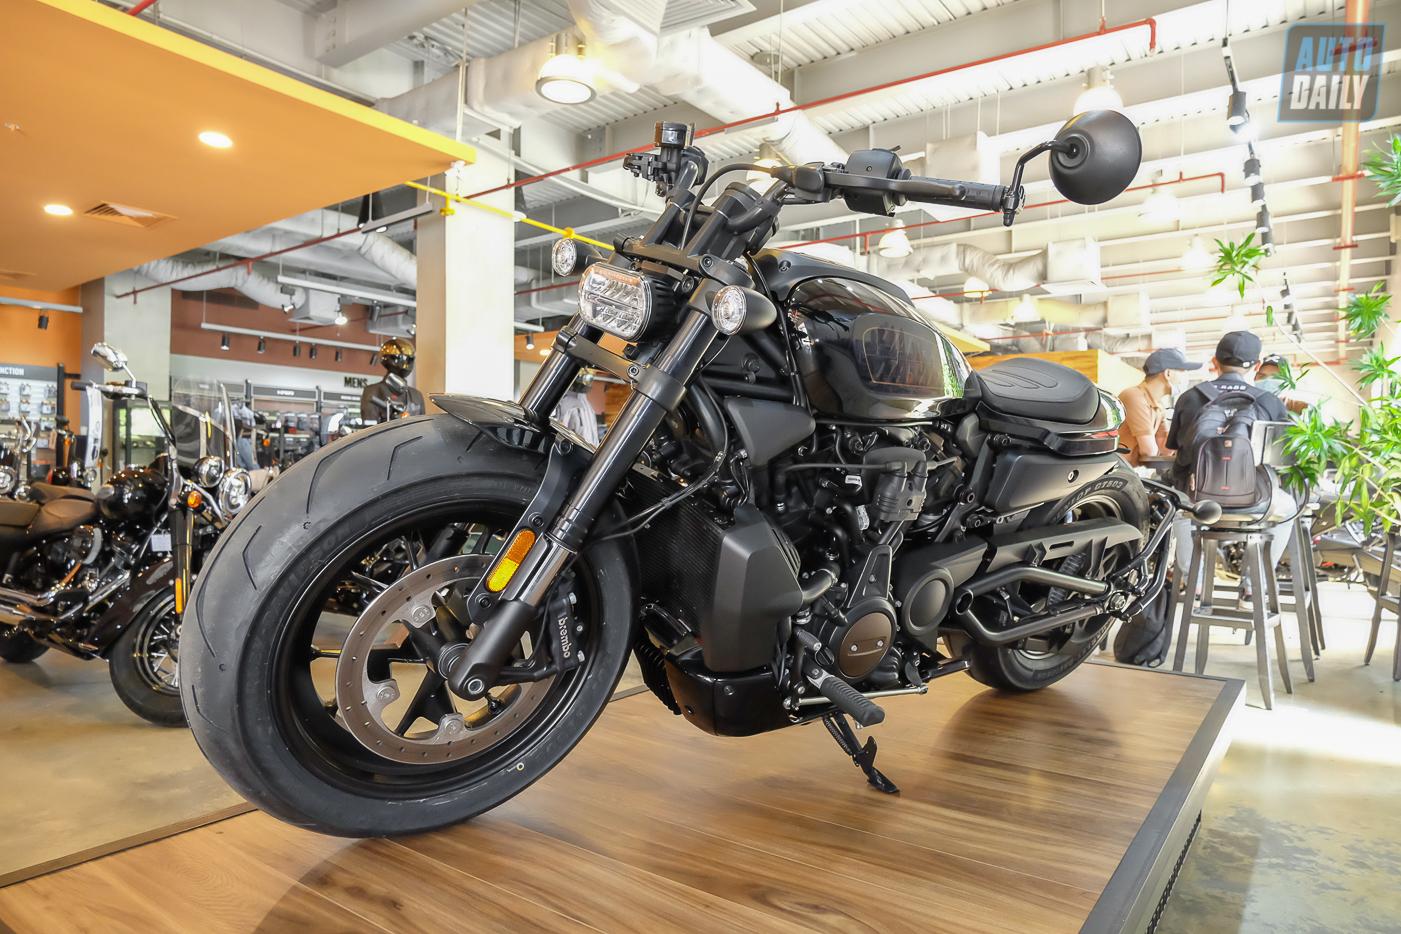 Cận cảnh Harley-Davidson Sportster S giá từ 589 triệu đồng tại Việt Nam Harley-Davidson Sportster S (21).jpg